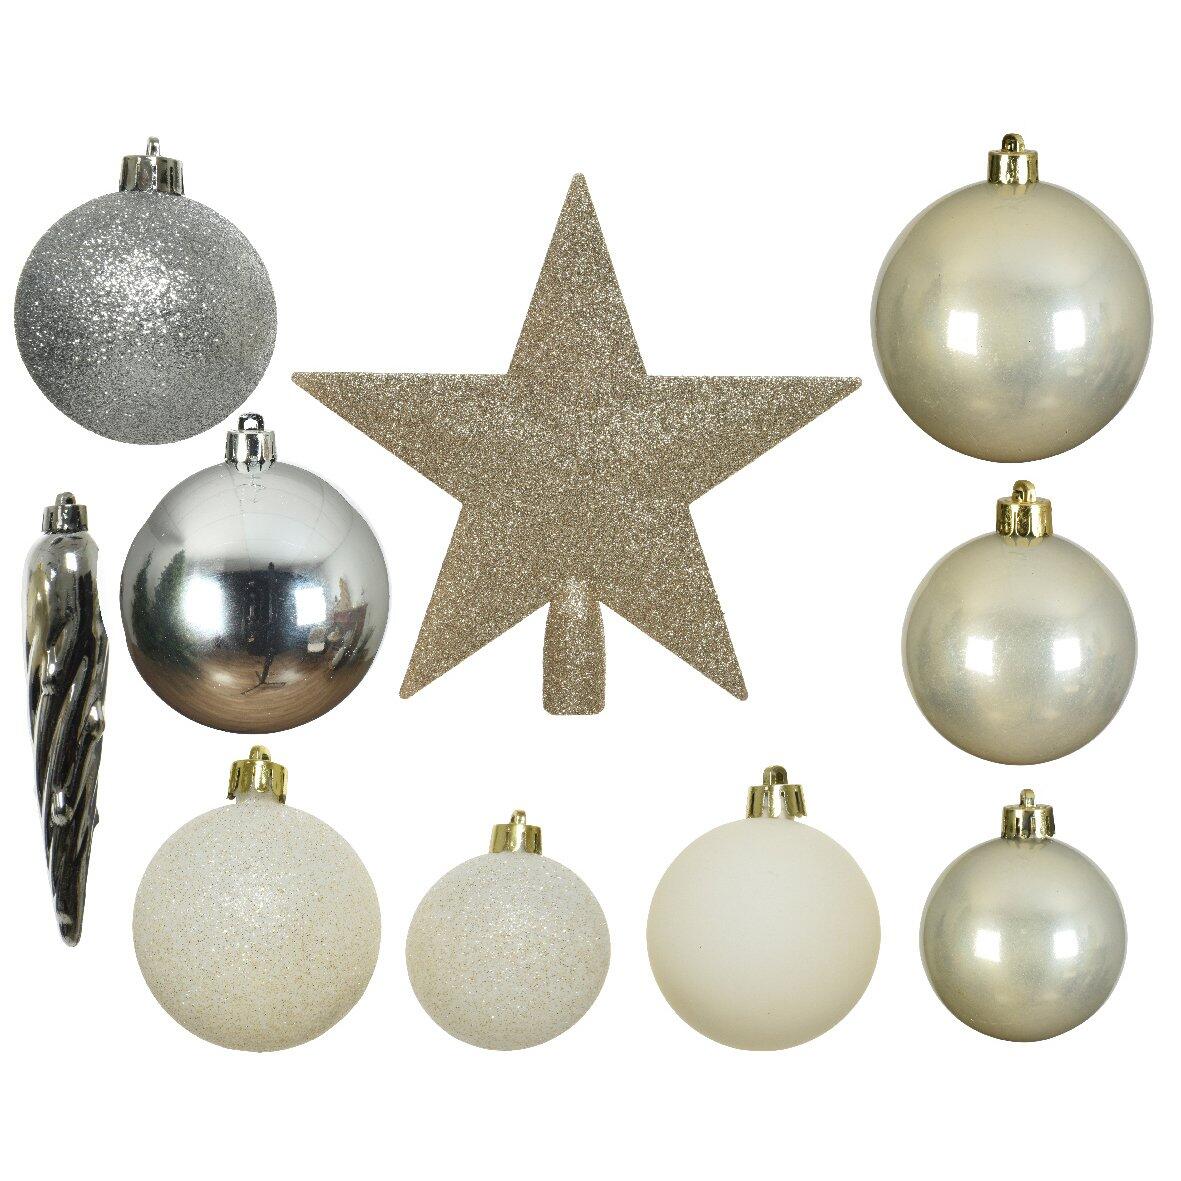 Kit de decoración para árbol de Navidad Novae multi Plata / Lana blanca / Oro /	 Perla 1